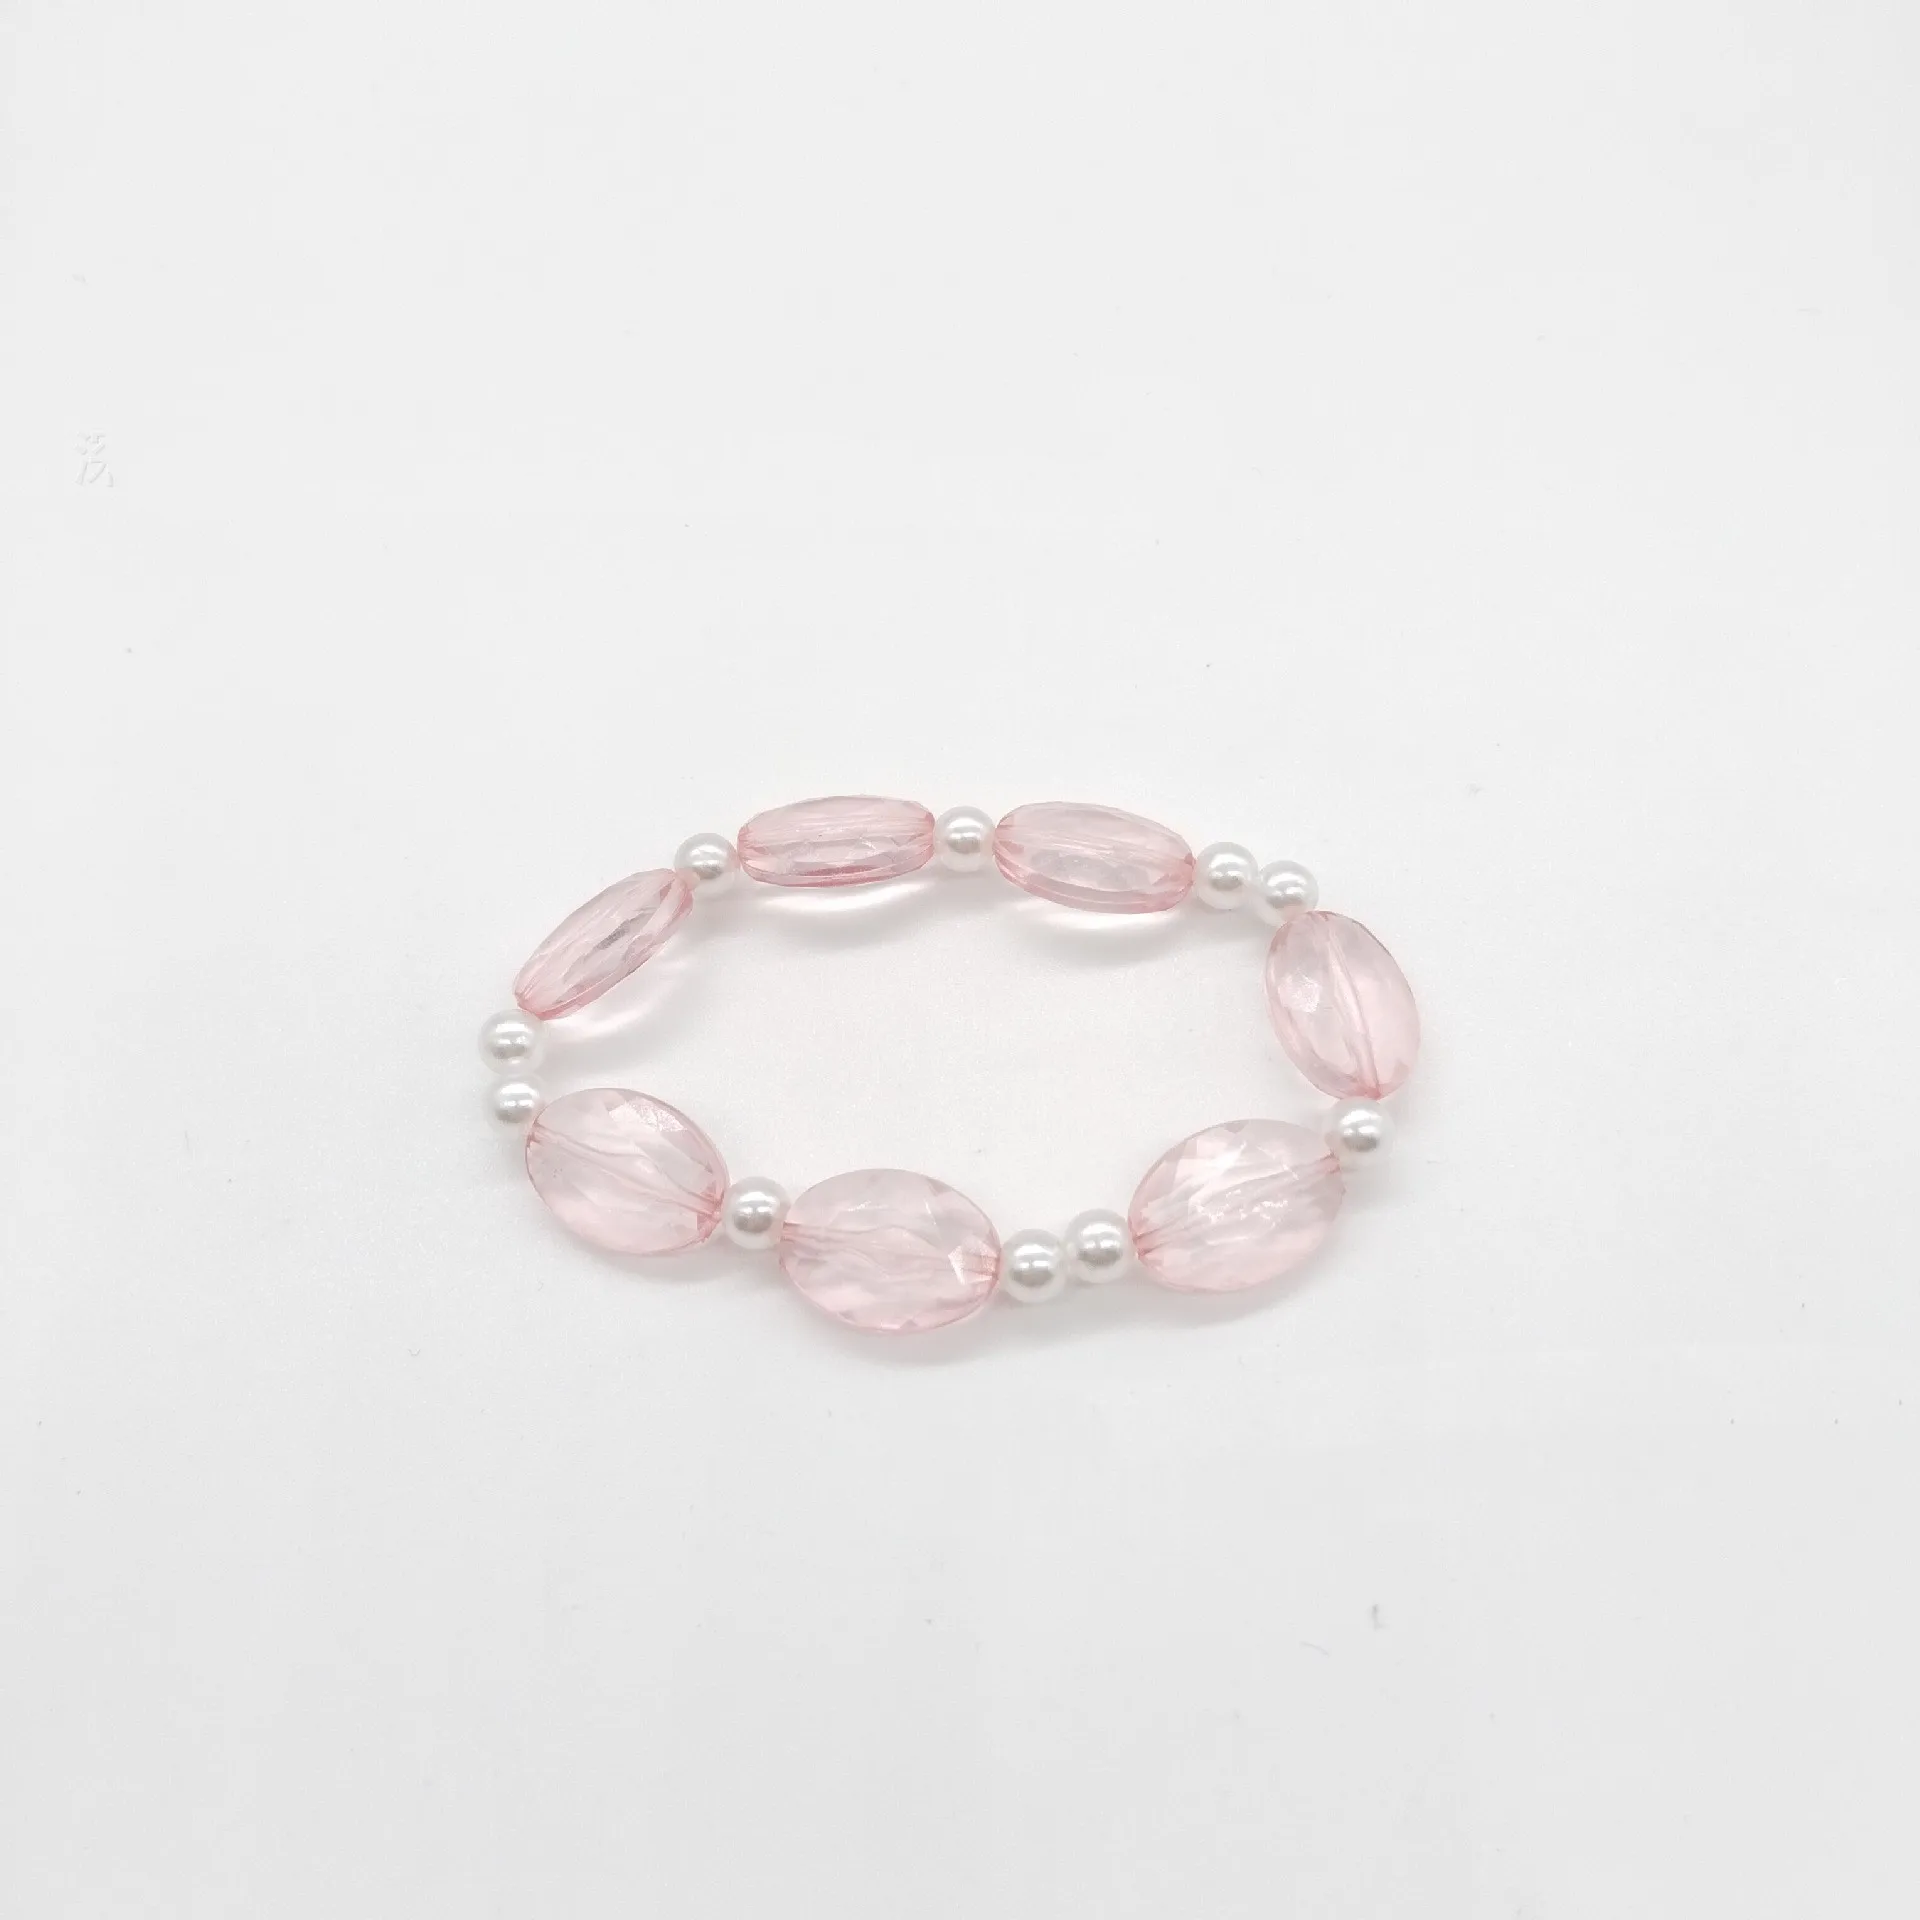 Комплект украшений в виде розовых морских раковин, Милые серьги, ожерелье, браслет, Нежный кулон, аксессуары в стиле принцессы-Русалки